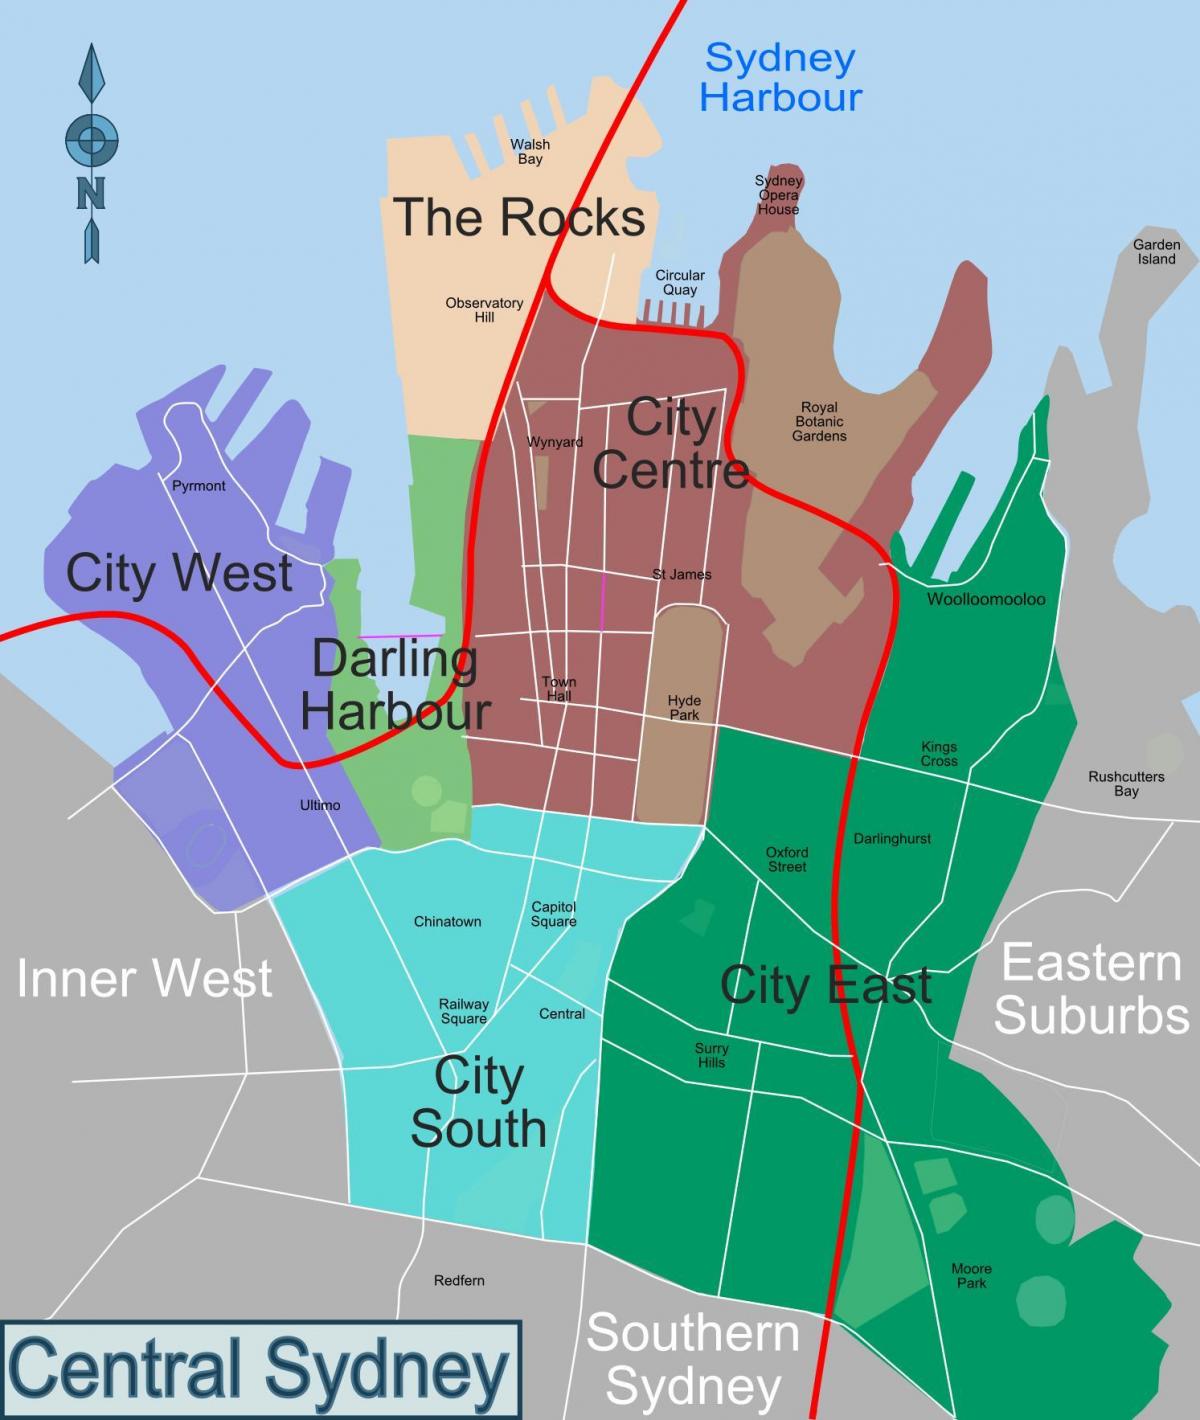 Mappa del quartiere di Sydney